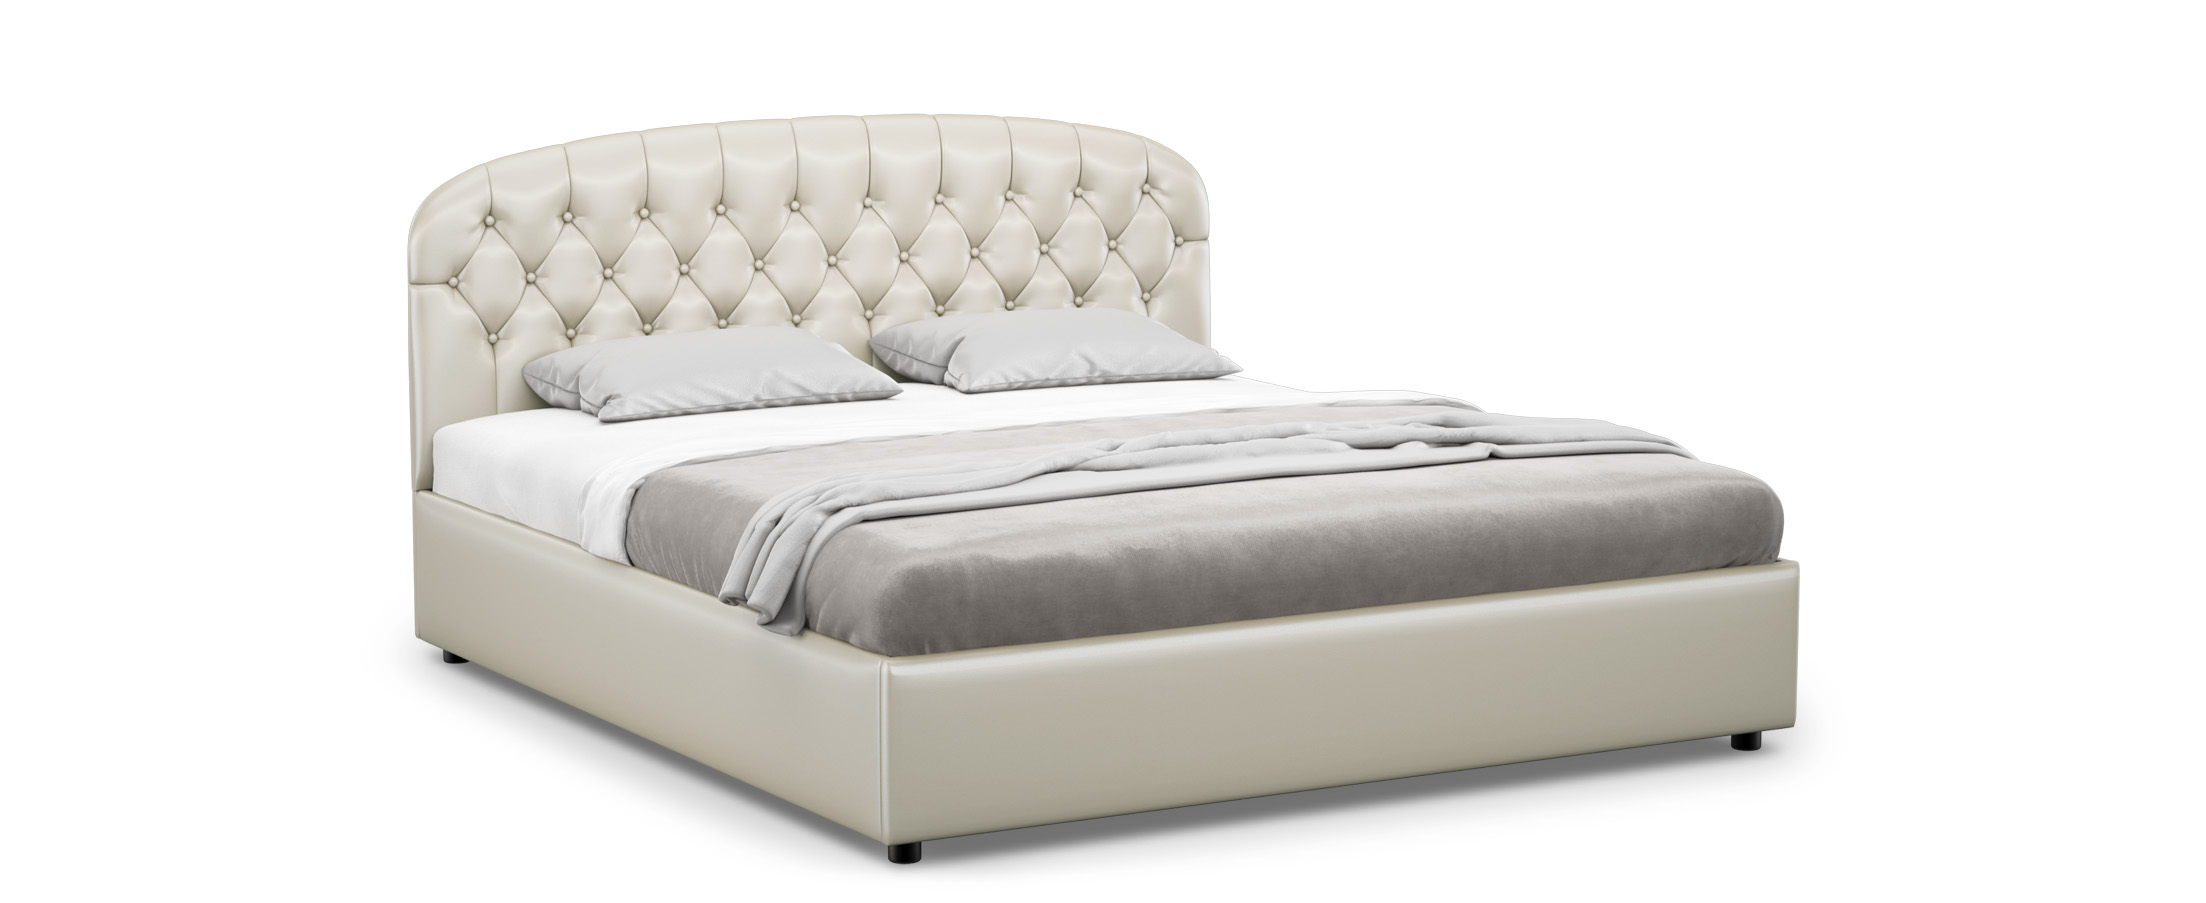 Кровать двуспальная Bianca New 180х200 Модель 1227